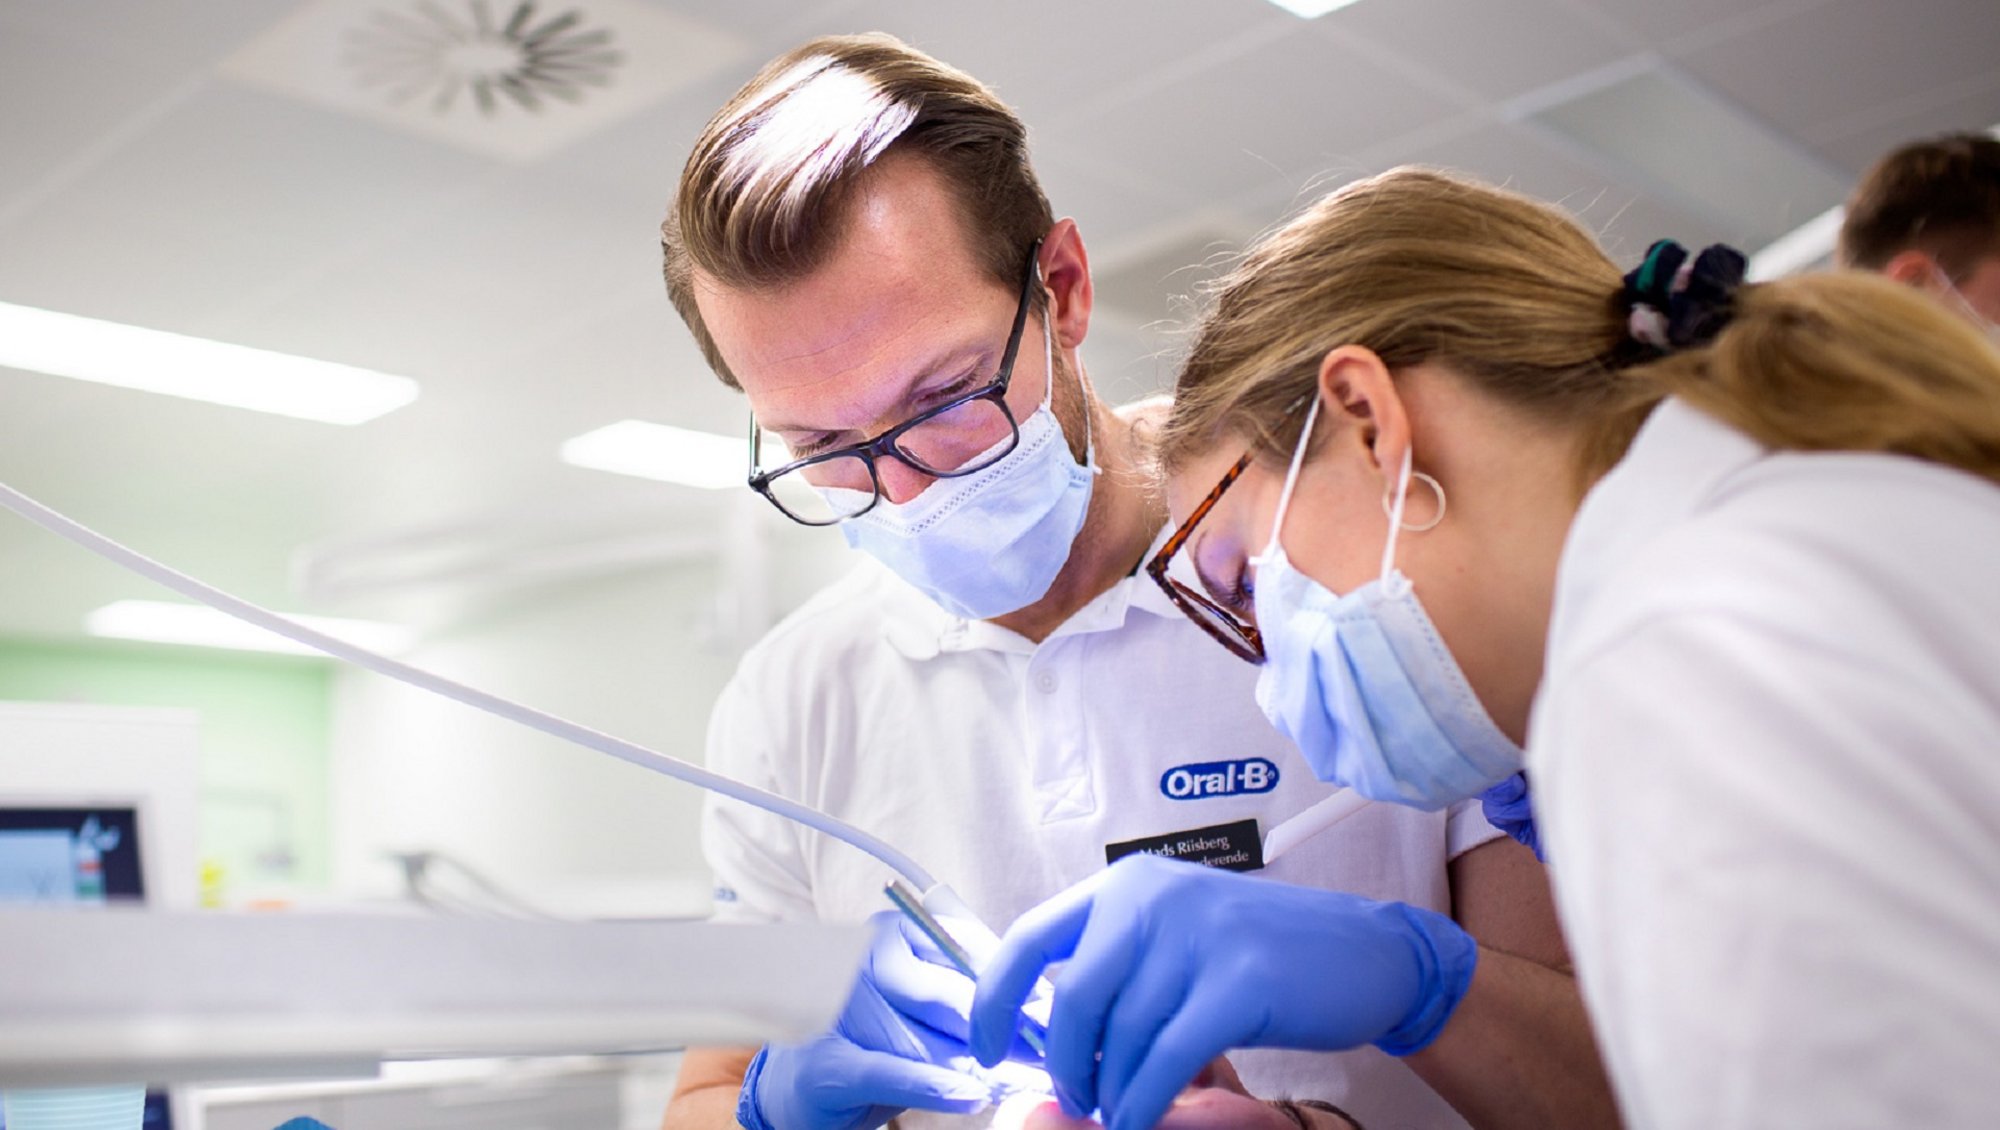 Tandlægestuderende der øver sig i klinikken Foto: Lars Kruse